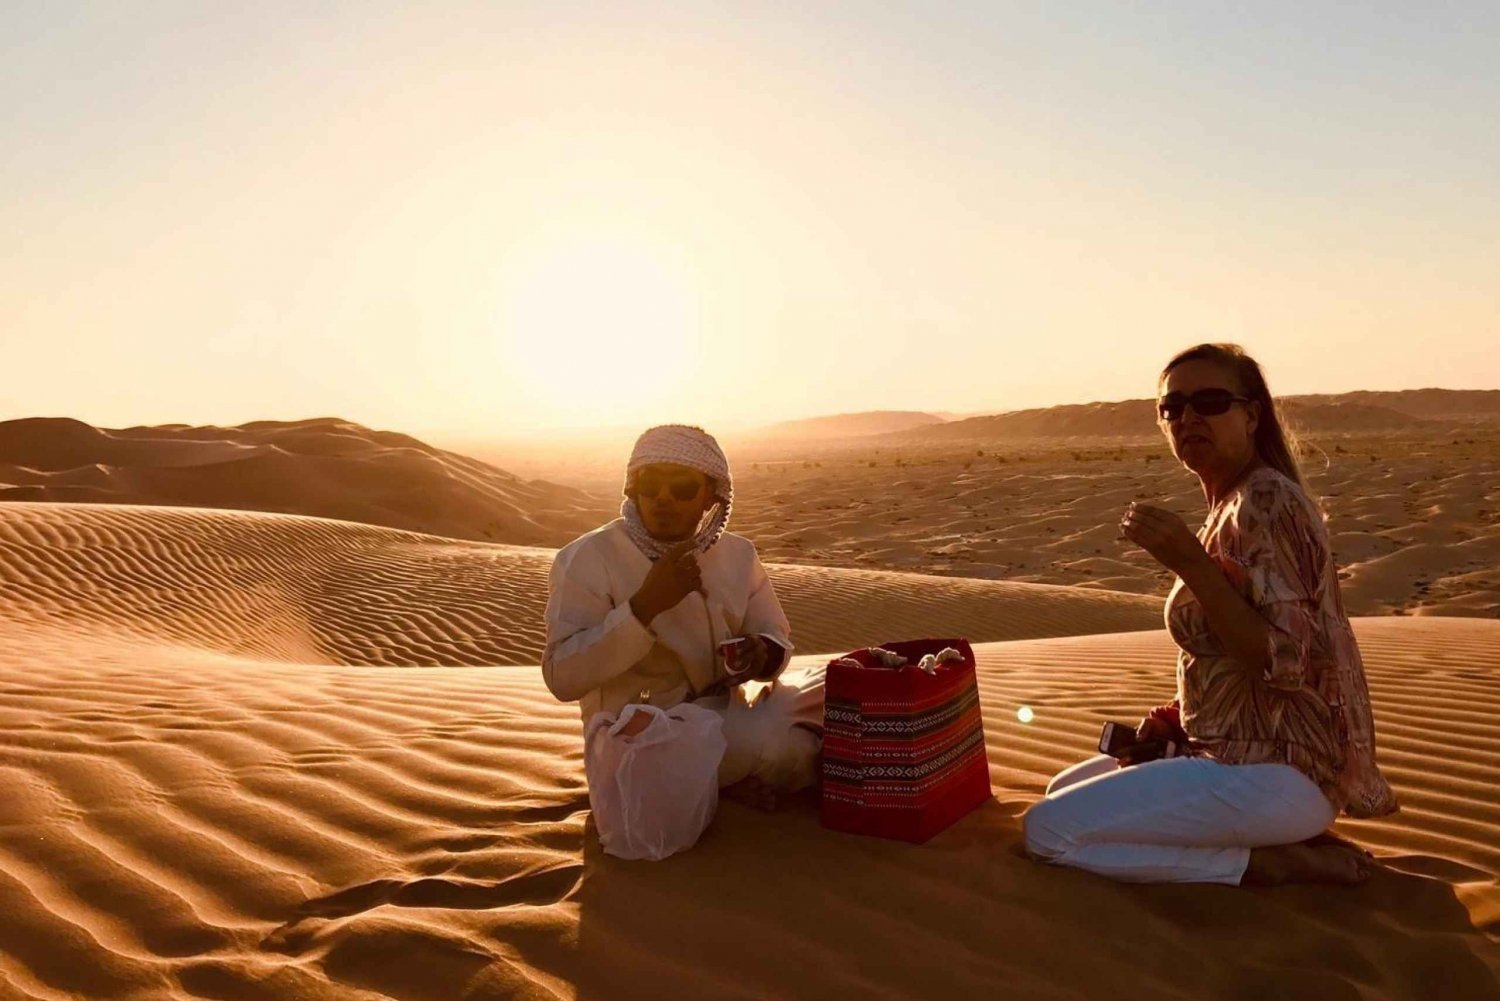 Safári no deserto: Passeio ao pôr do sol no Empty Quarter